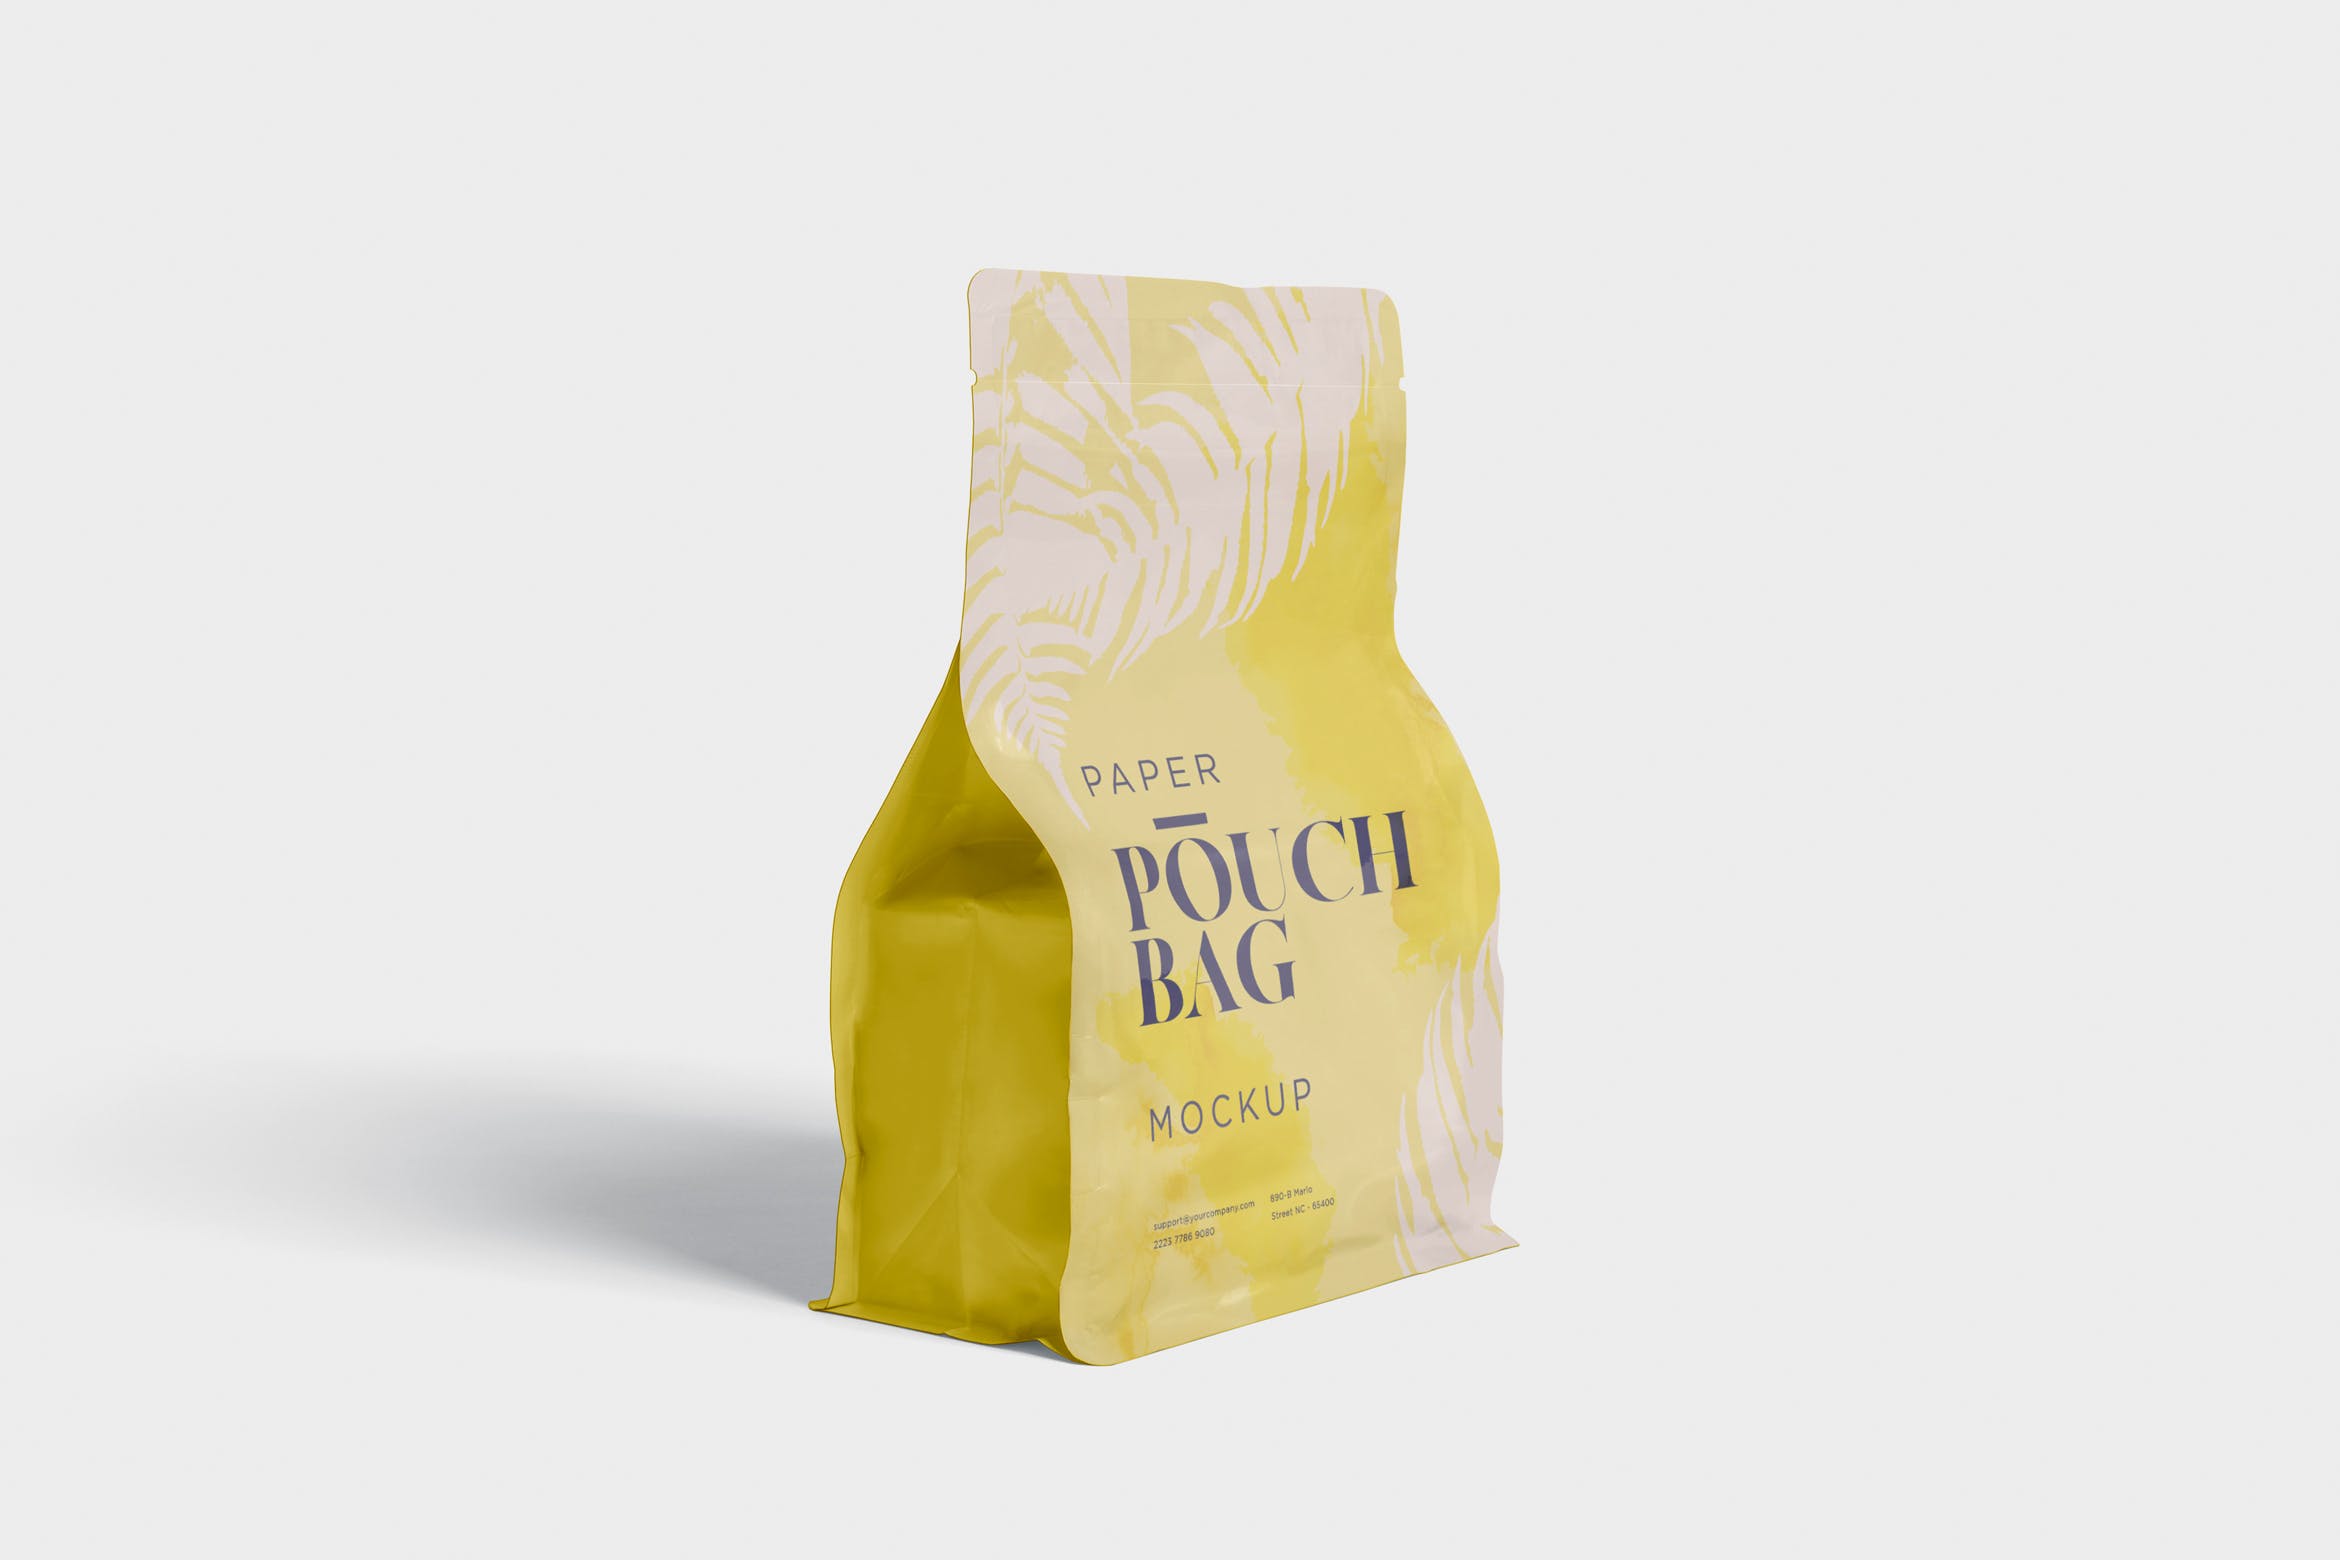 零食包装纸袋/塑料袋设计效果图样机 Paper Pouch Bag Mockup插图